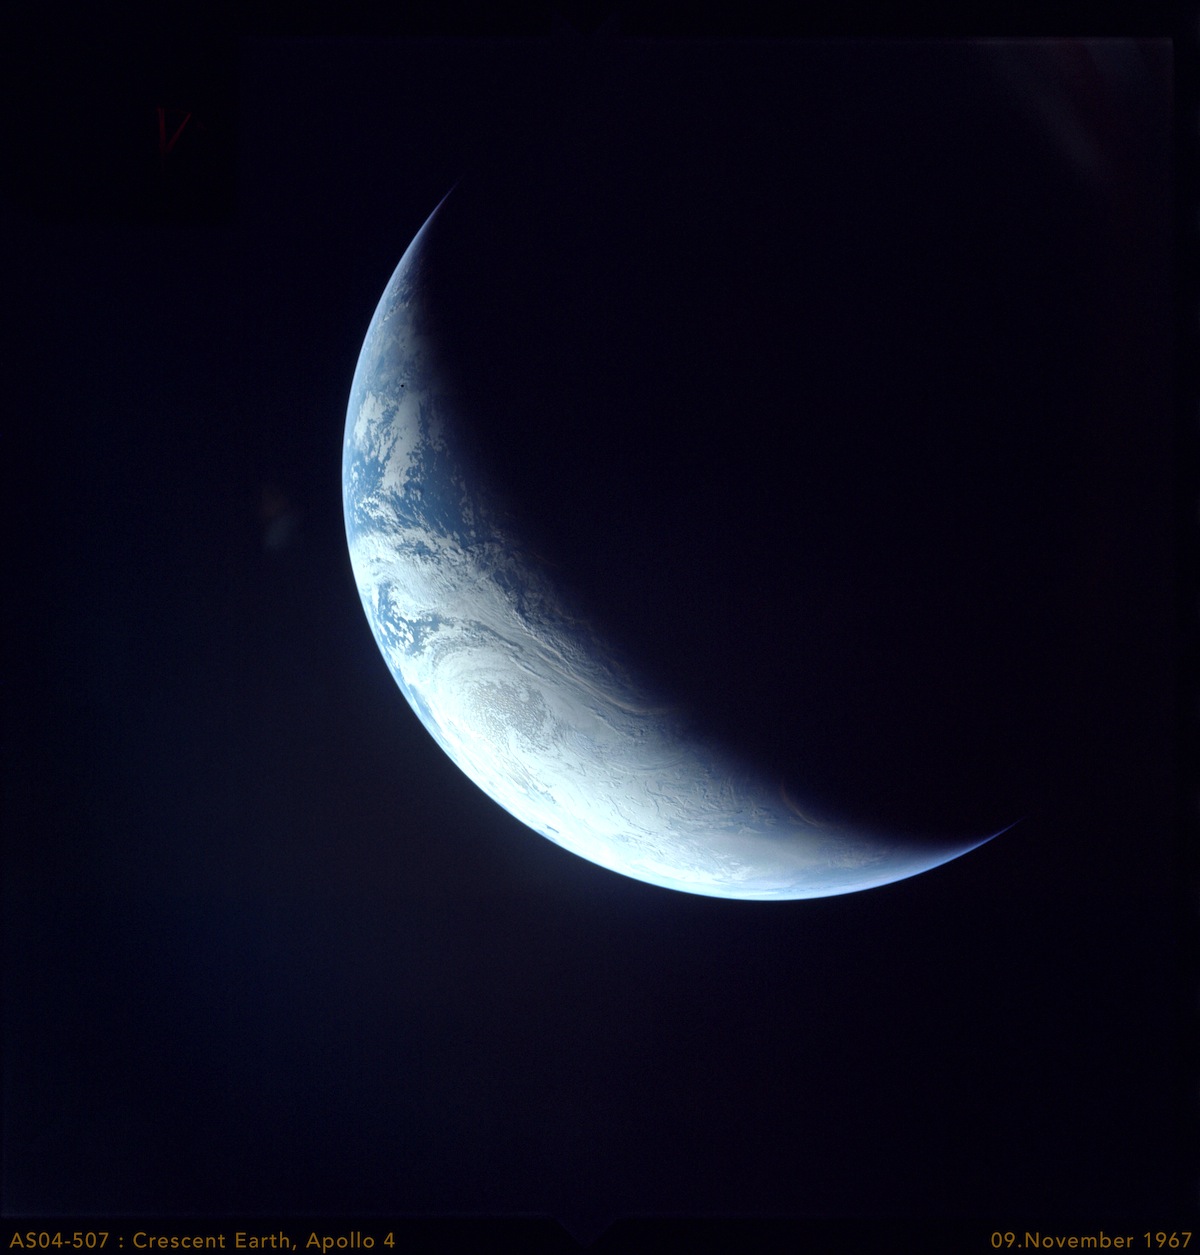 AS04-507: Apollo 4, Crescent Earth, 9.November 1967